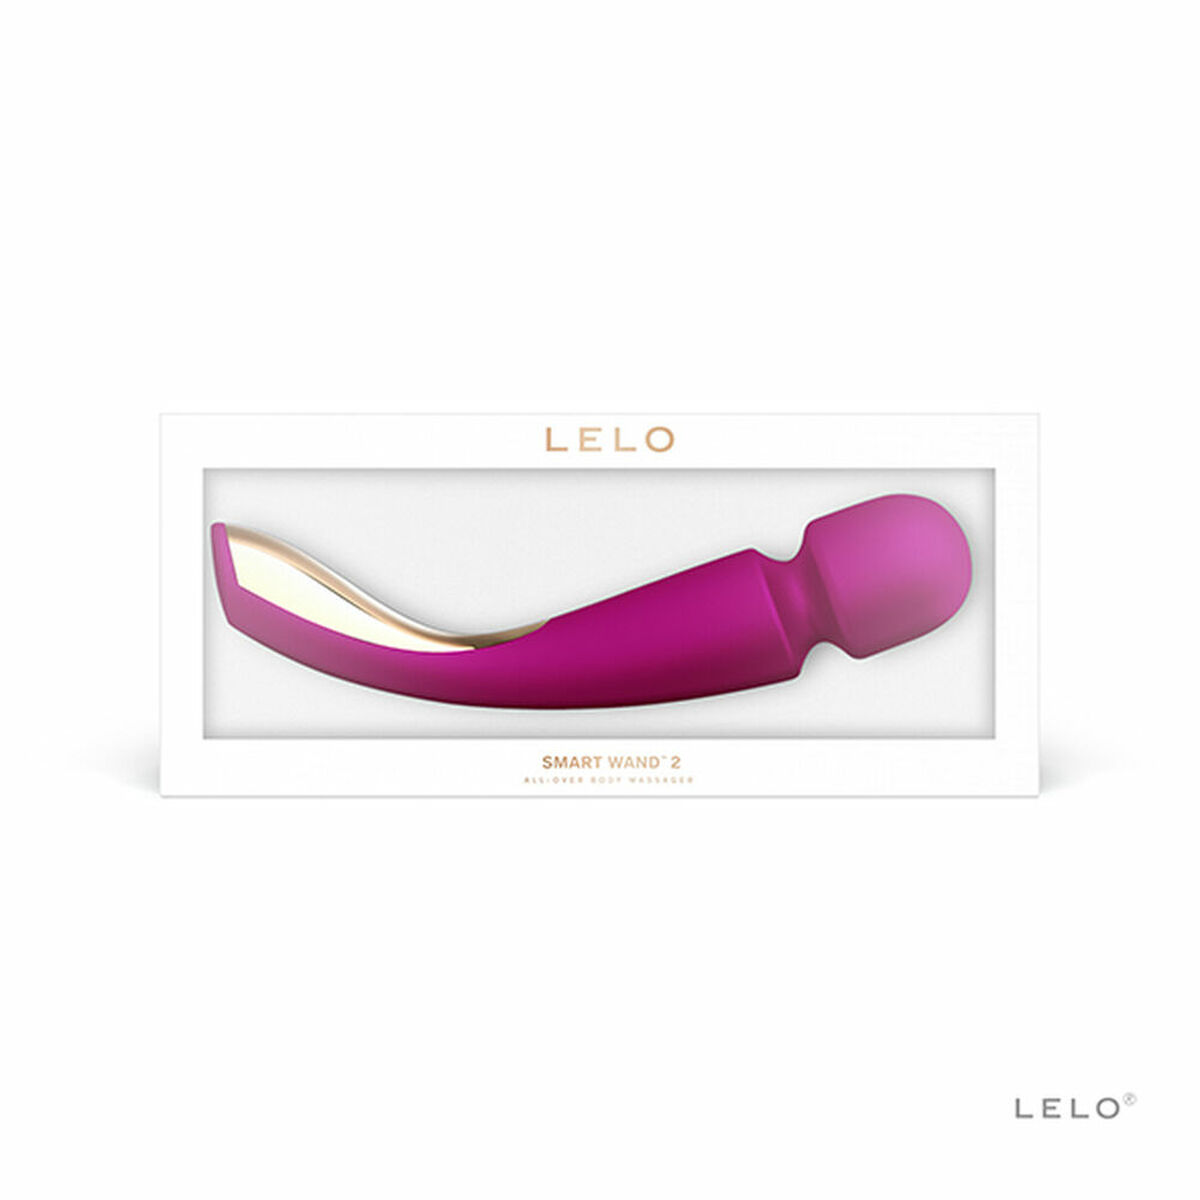 LELO - Smart Wand 2 Wand wand-massager - - Rosa Vibrator Medium